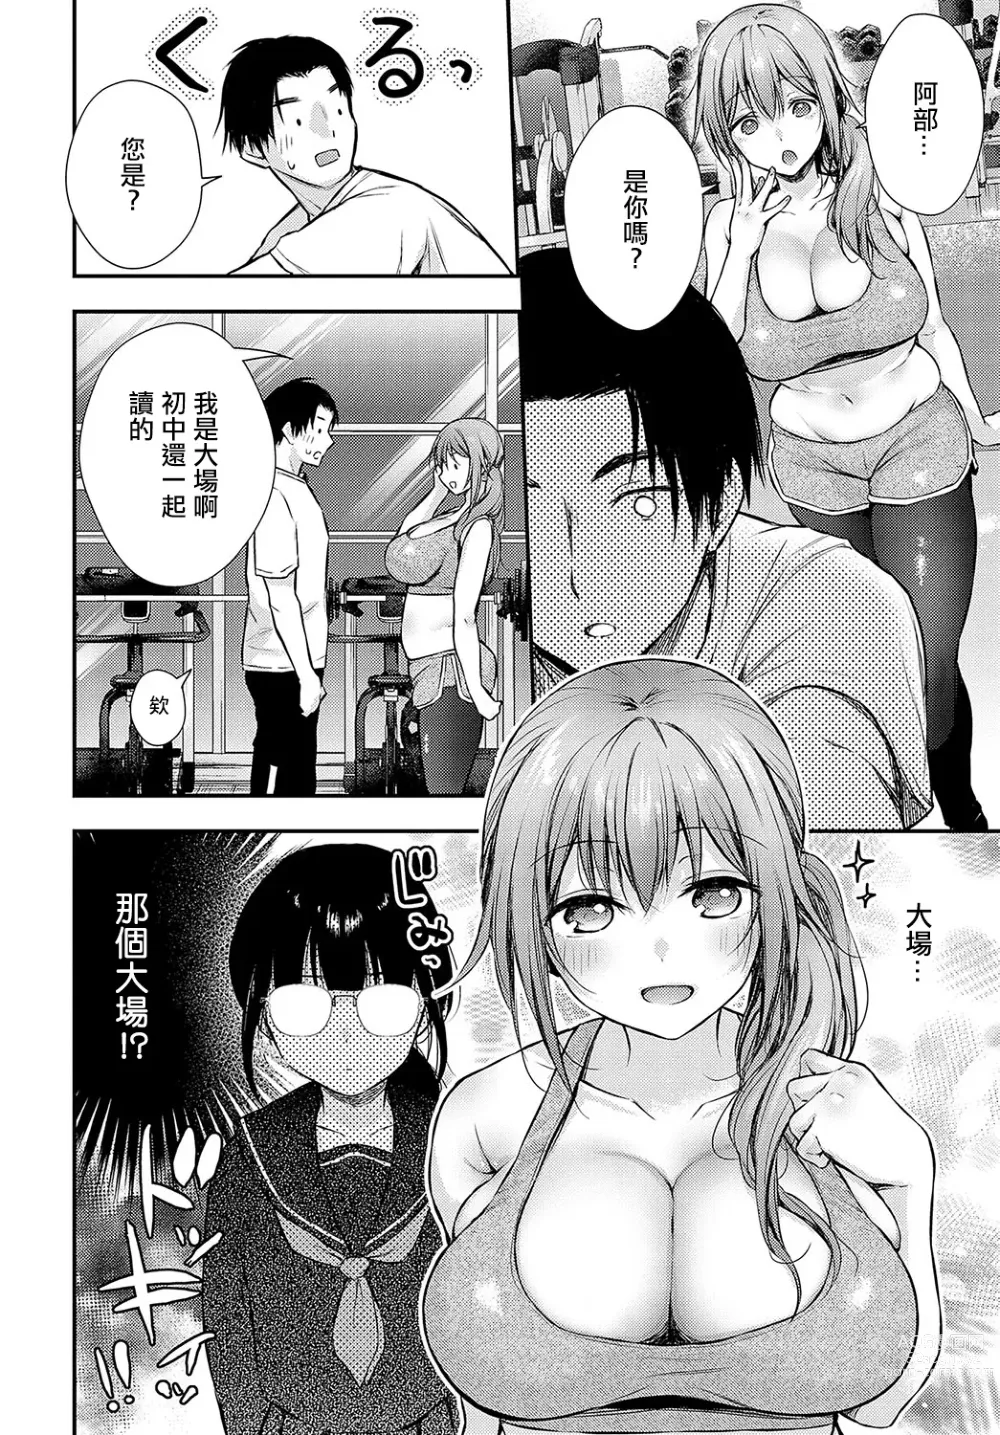 Page 2 of manga Mayonaka Training